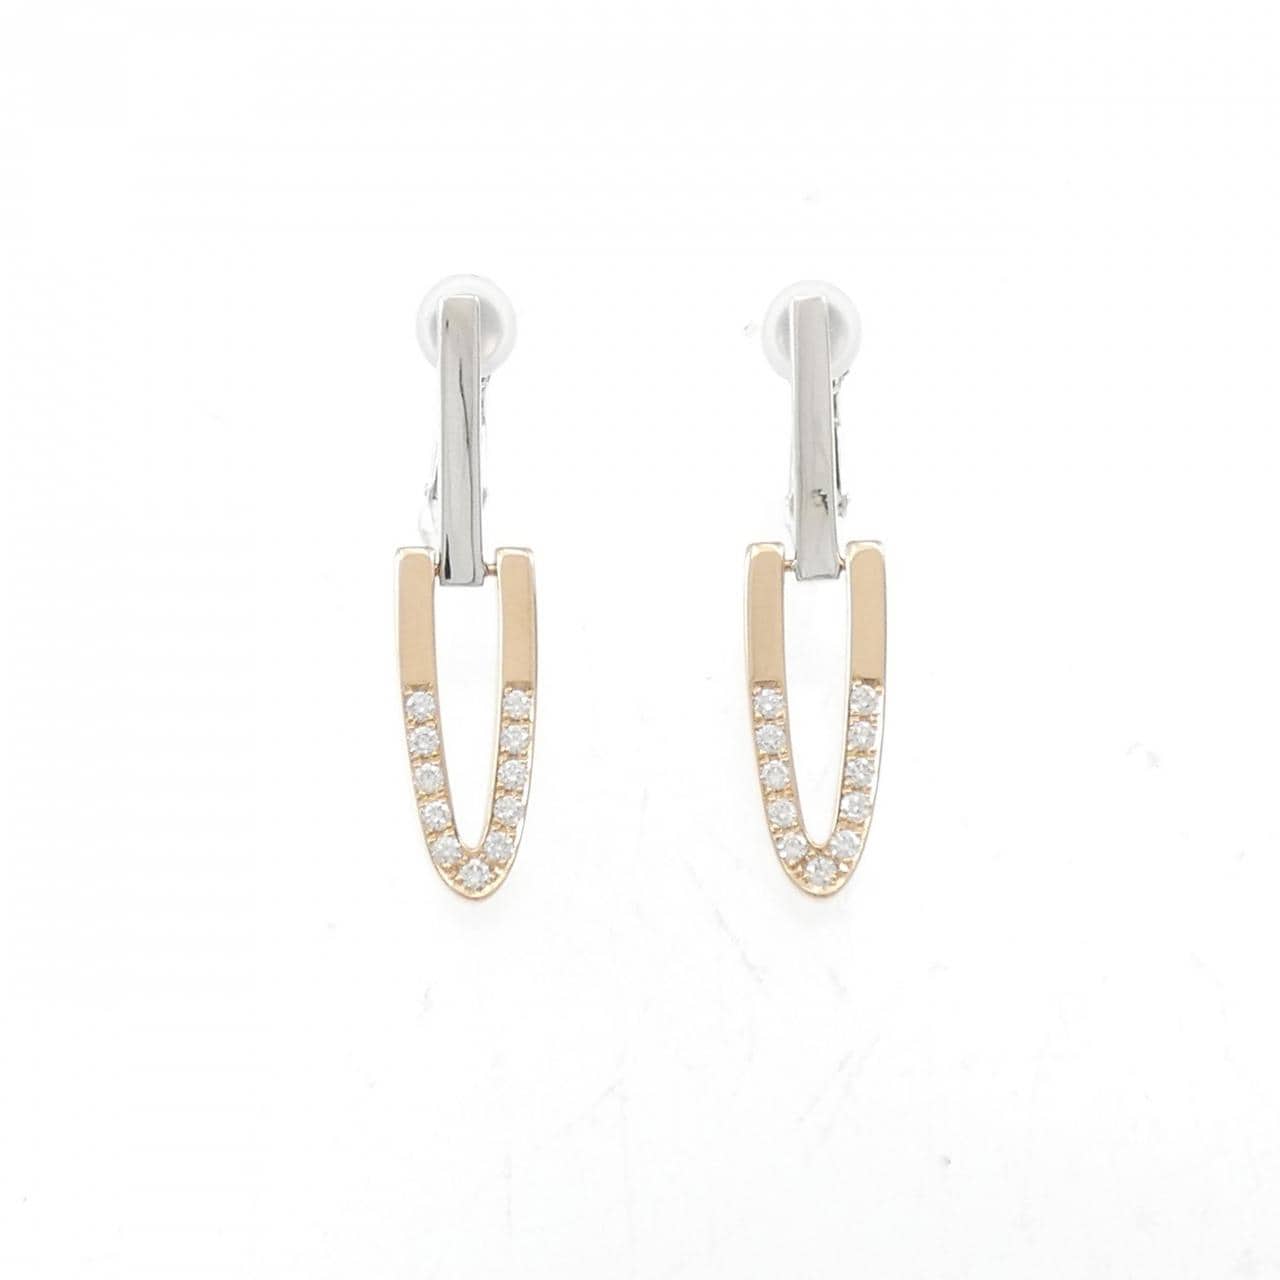 PT/K14WG/750PG Diamond Earrings 0.28CT